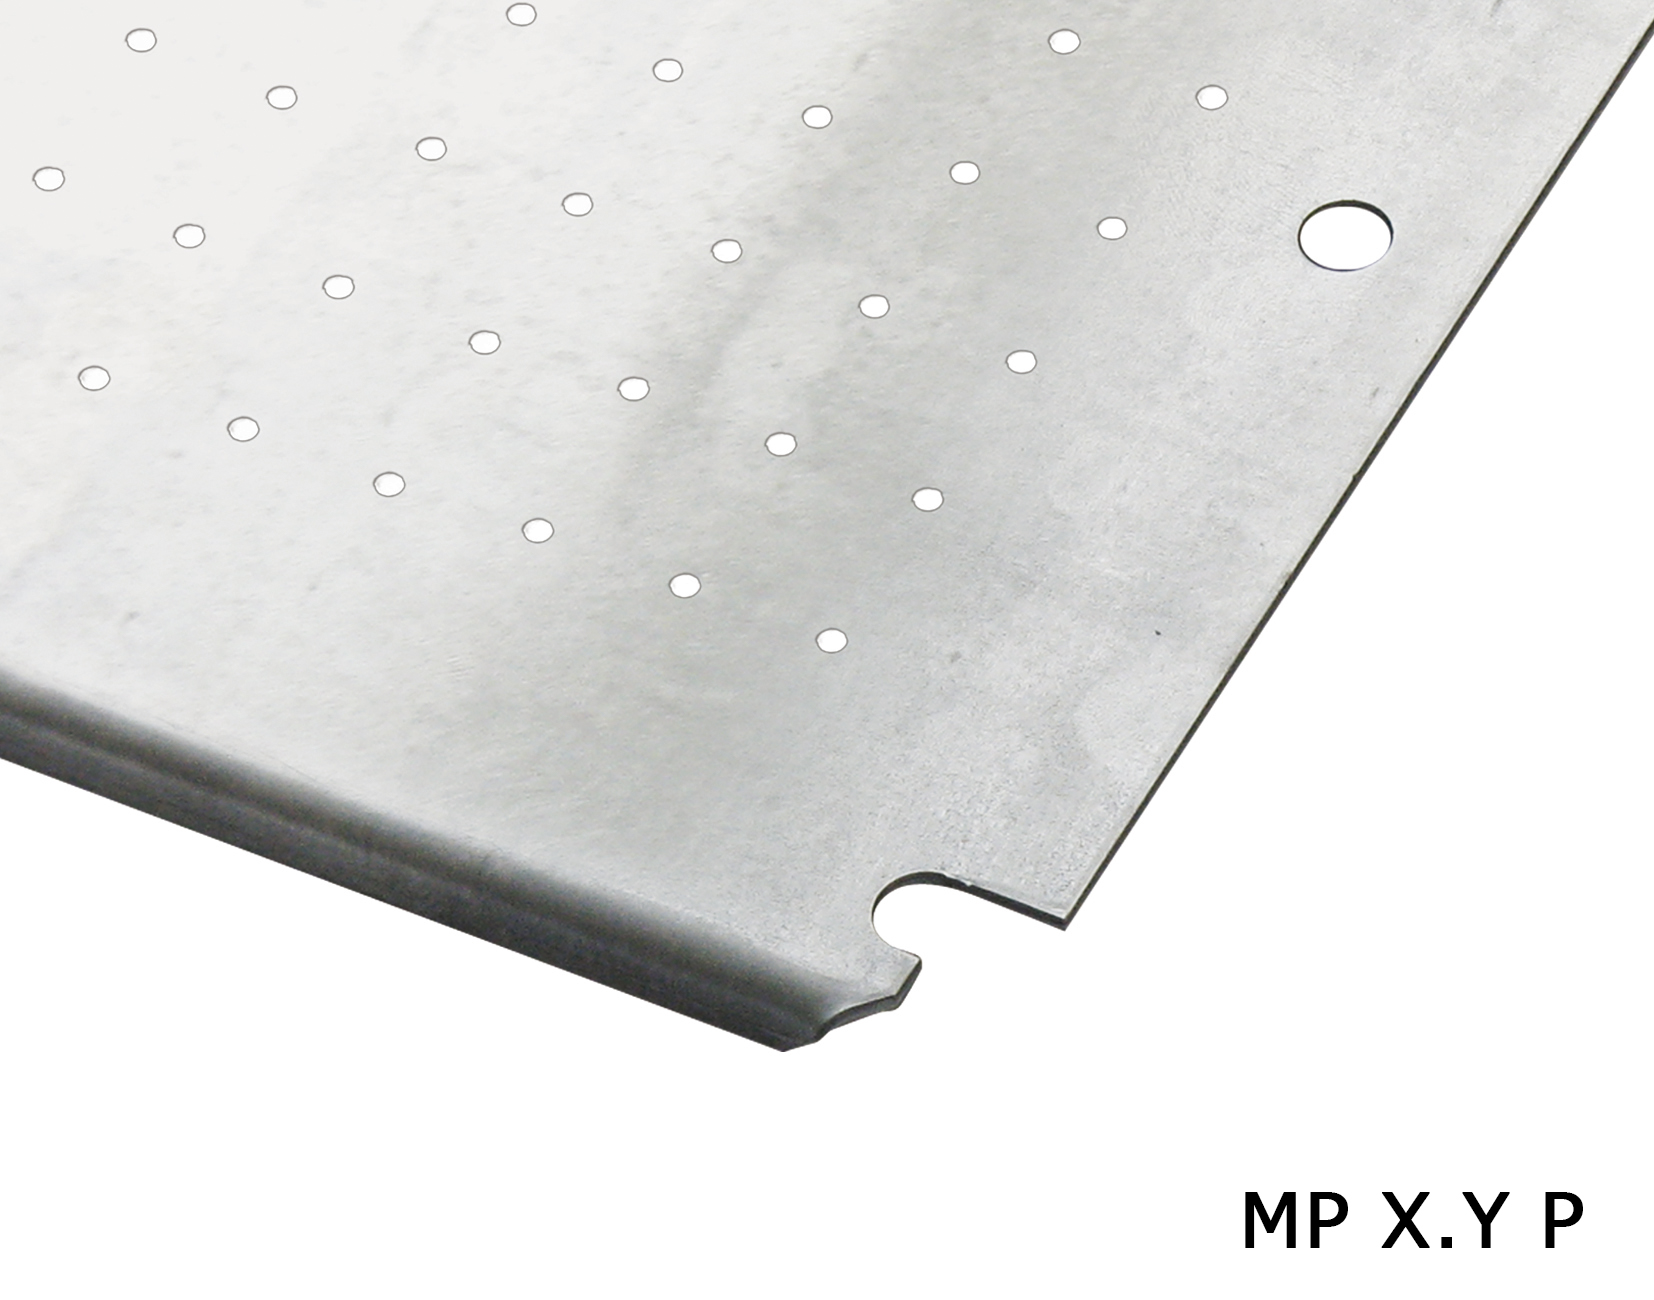 Панель монтажная микроперфорированная для компактных шкафов (MP 30.20 P)